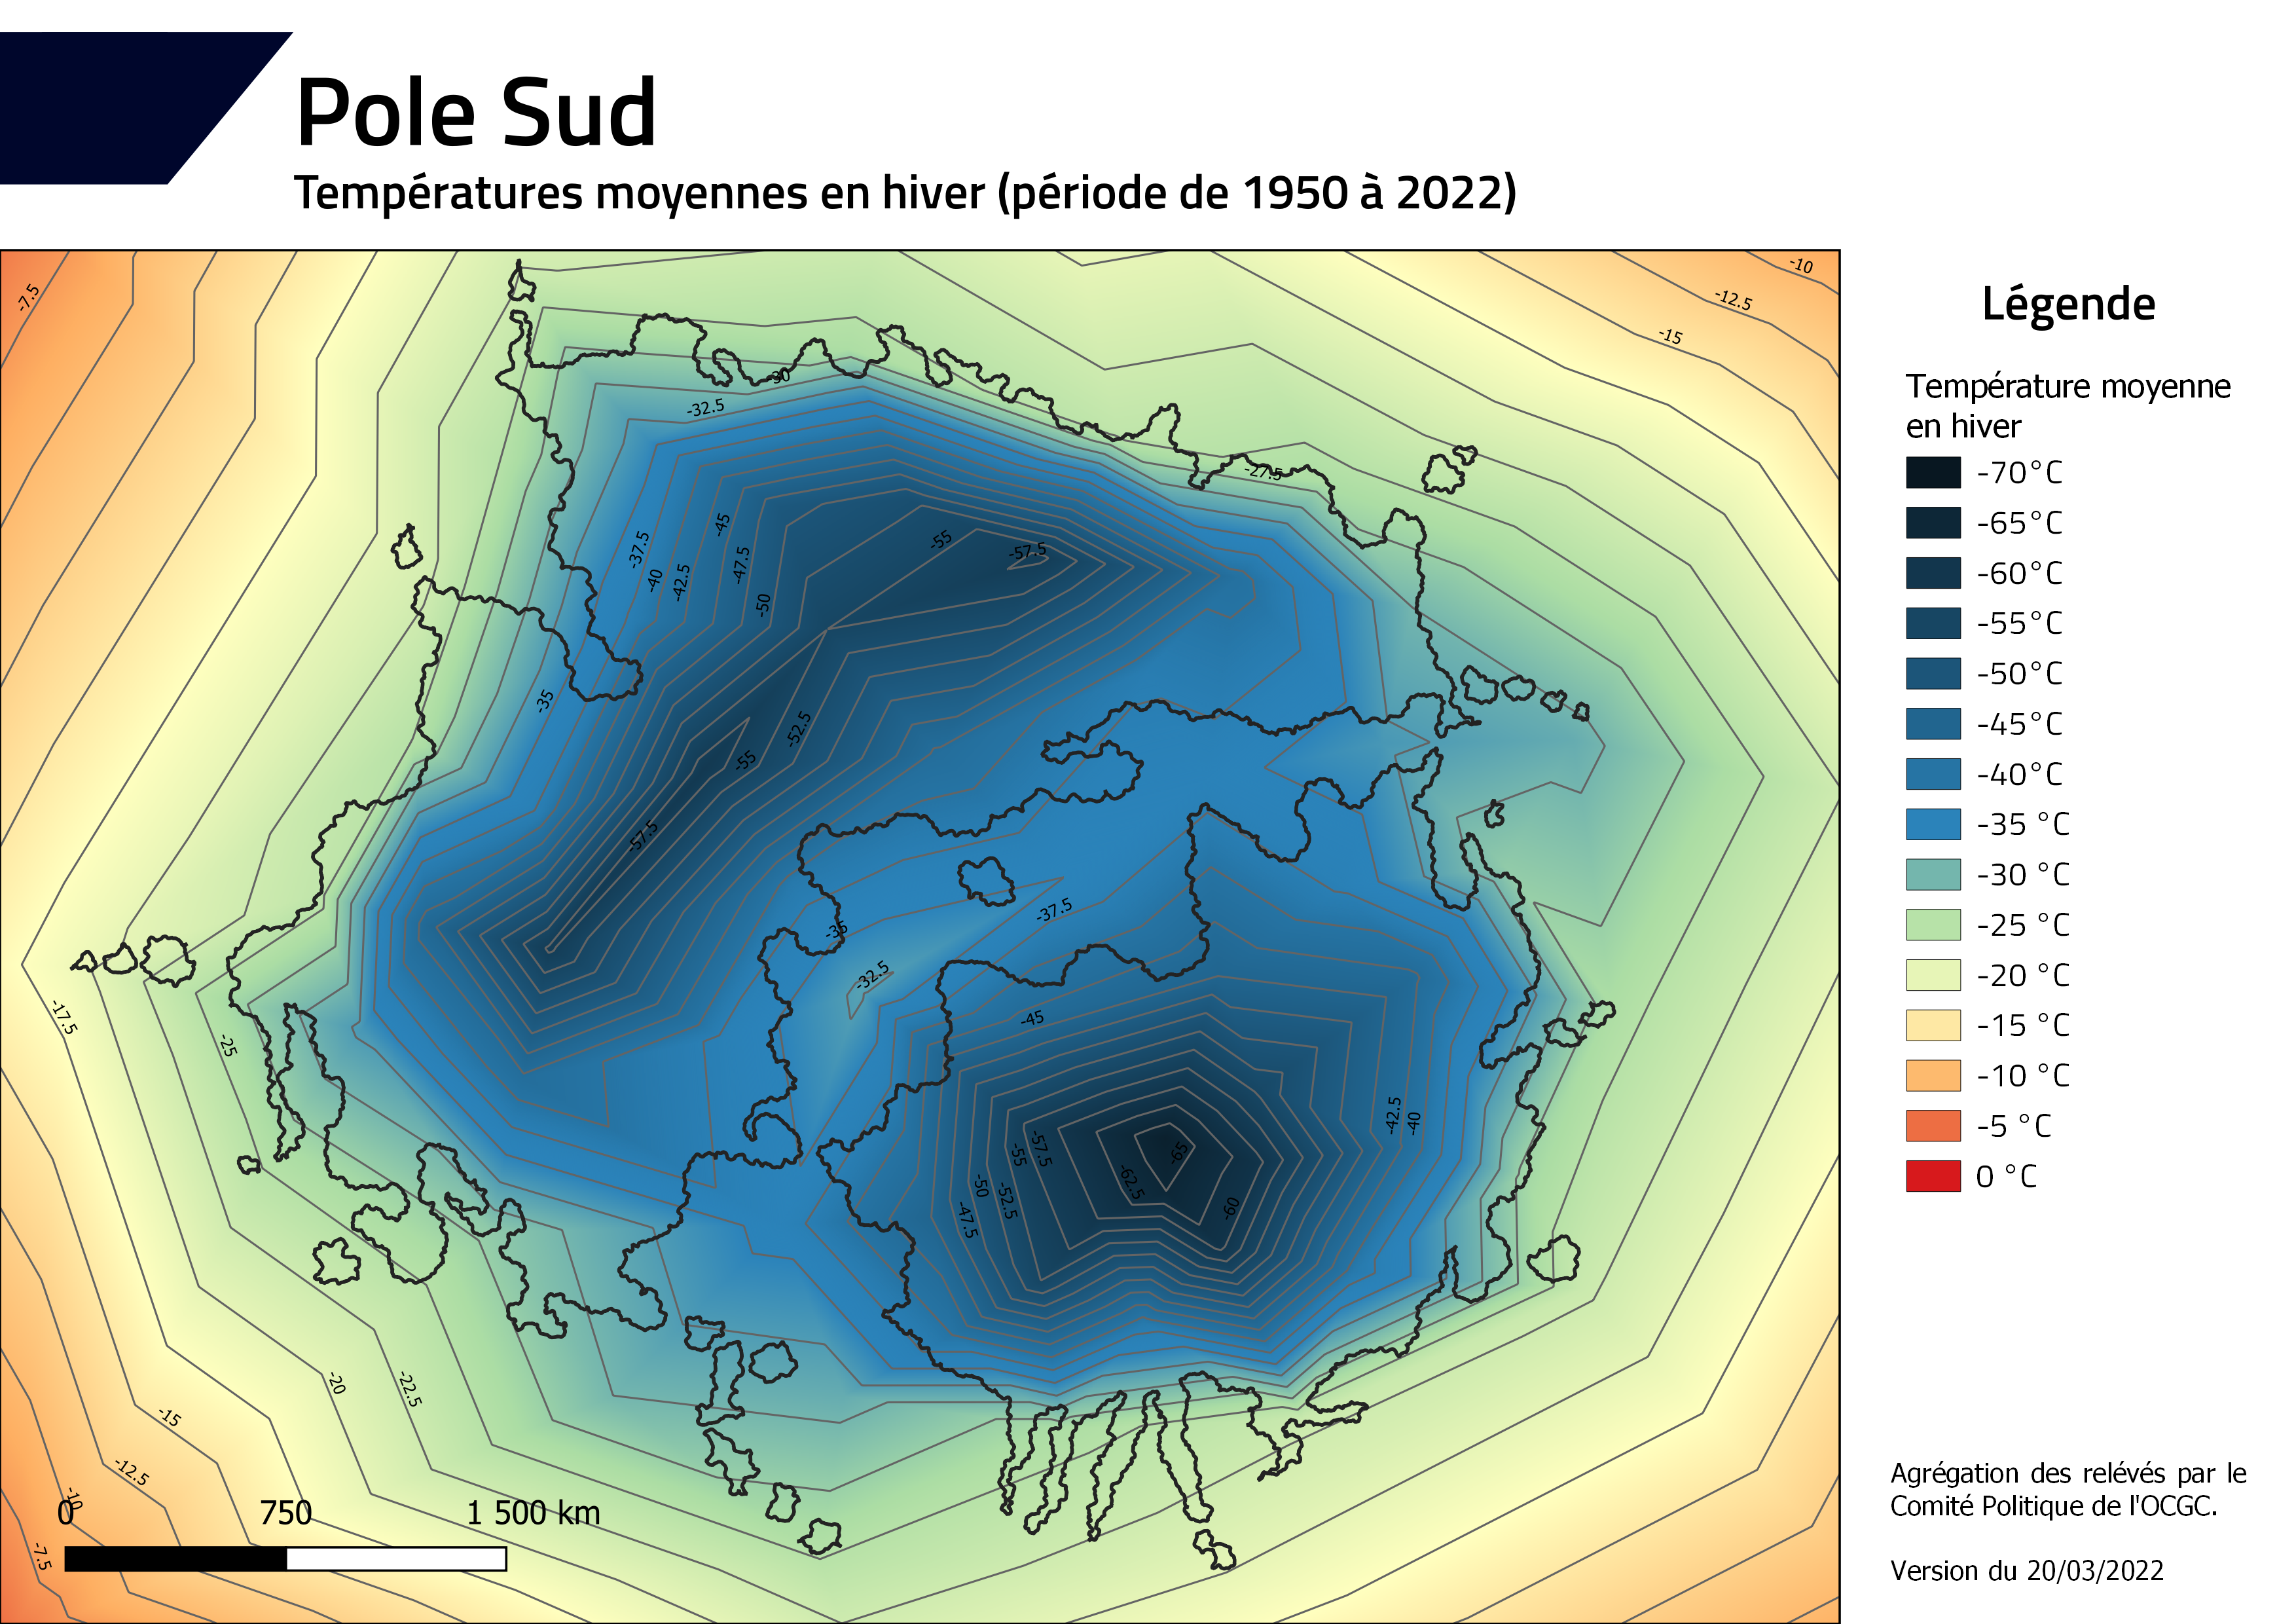 [RP - Poles] Les annonces : phase 3 - Page 6 PoleSud_temperature_hiver